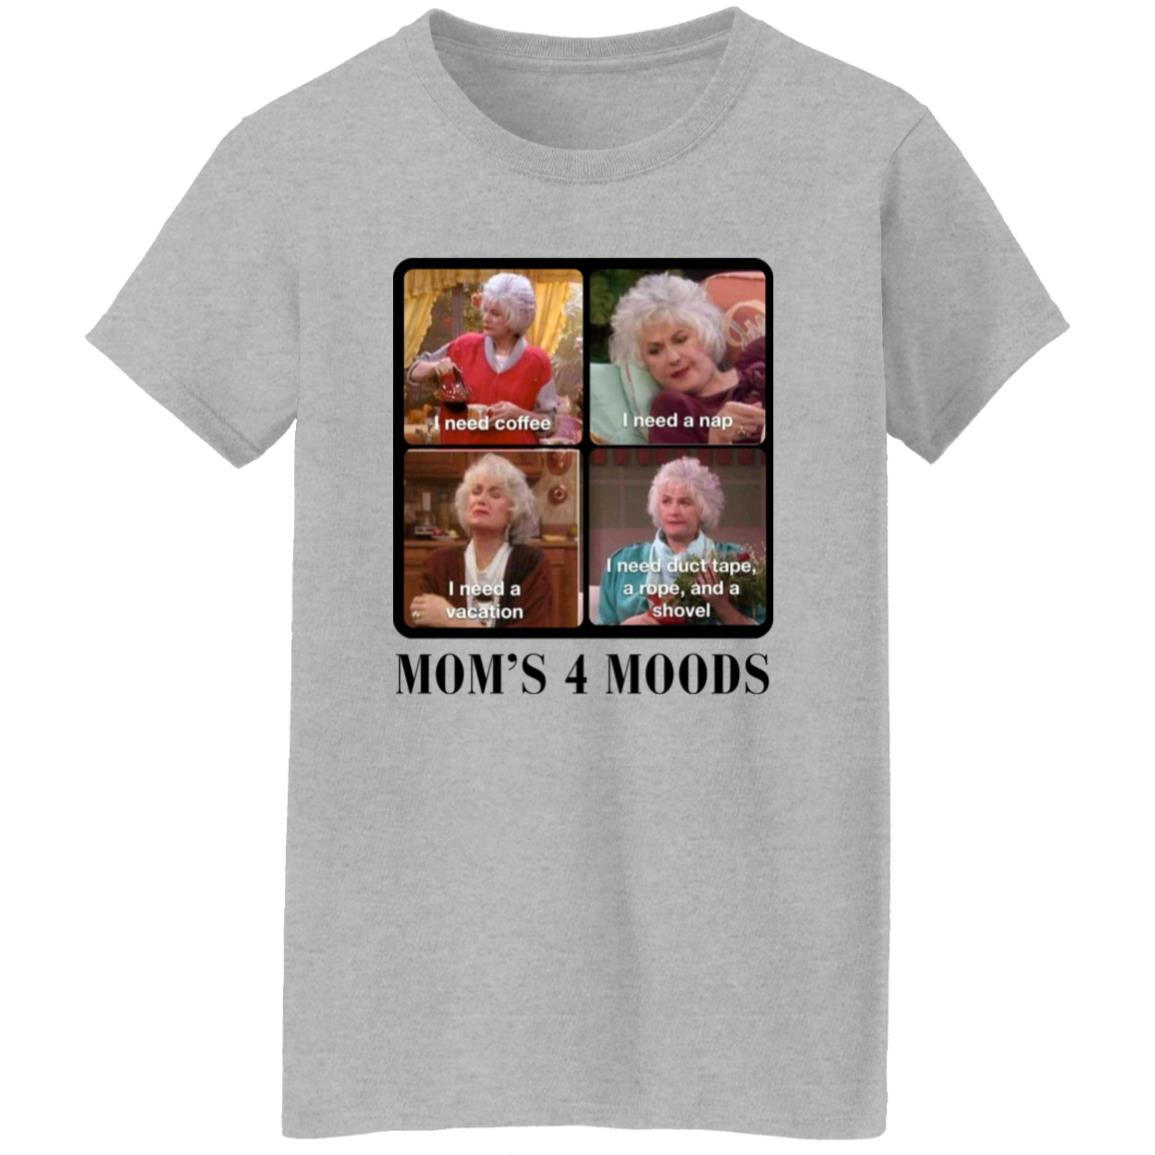 Mom's 4 Moods T-Shirt WB